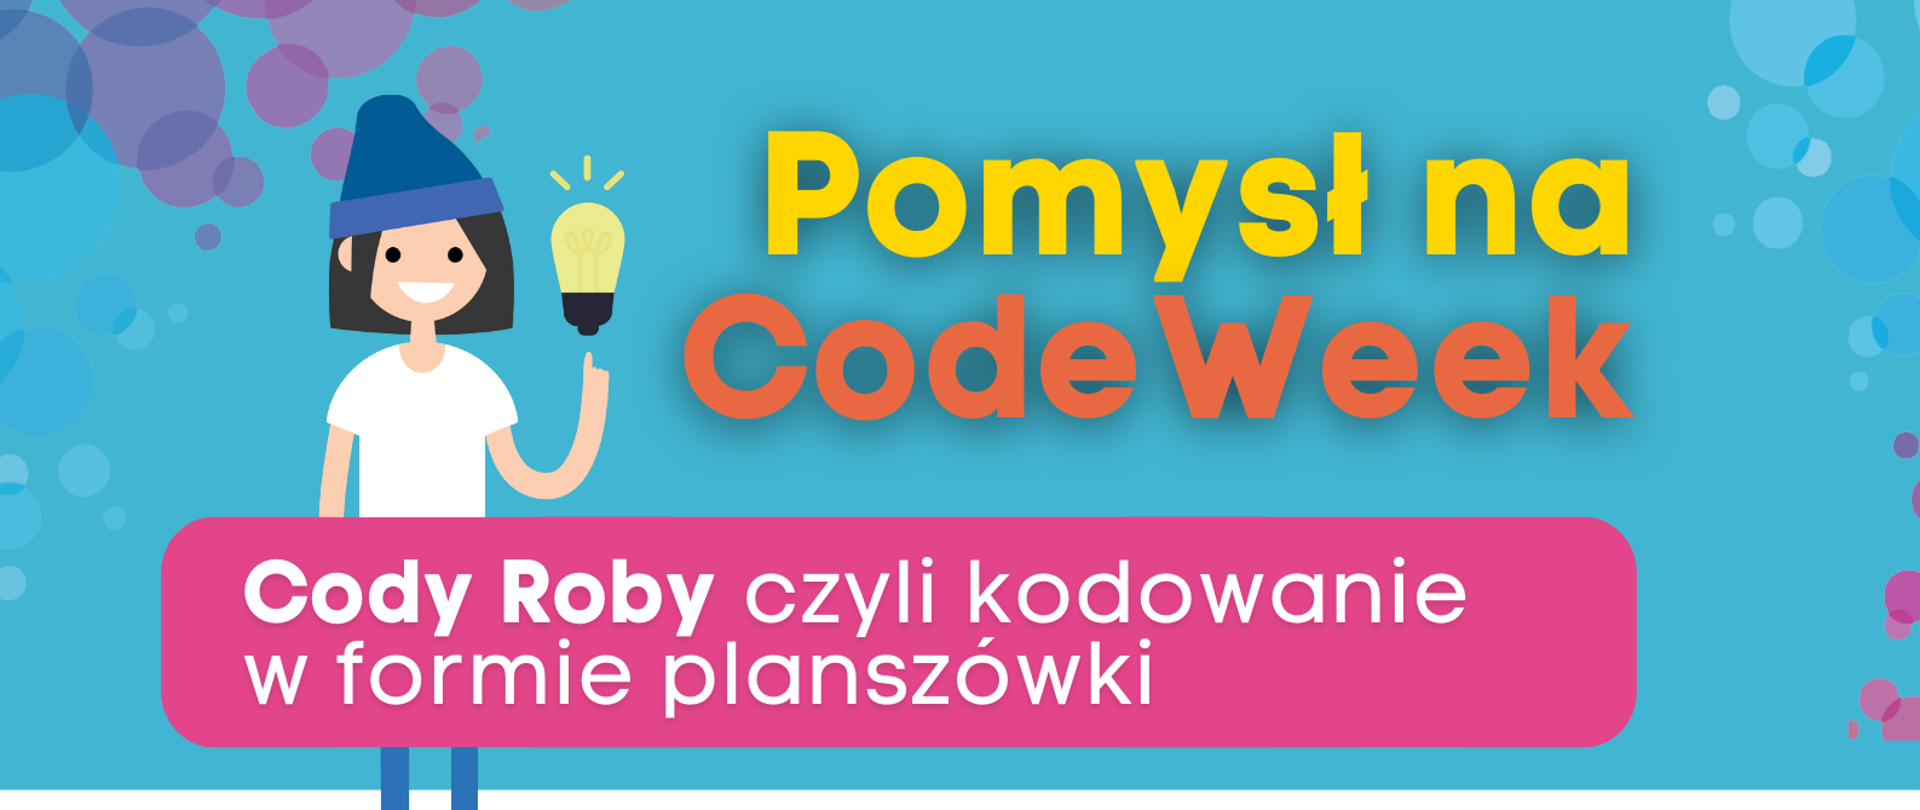 Grafika przedstawia plakat zachęcający do udziału w CodeWeek. W górnej części napis "Pomysł na CodeWeek" oraz uśmiechnięta dziewczynka z żarówką. Pod spodem napis " Cody Roby czyli kodowanie w formie planszówki”. Poniżej w formie etykiet przedstawione są kolejne kroki zgłoszenia inicjatywy:
„1. Wejdź na koduj.gov.pl”,
„2. Wydrukuj Cody Roby i zacznij programować z rodziną lub znajomymi”
„3. Zgłoś swoje wydarzenie na codeweek.eu/add i zostań częścią codeweekowej społeczności "
"4. Pobierz certyfikat".
W dolnej części tekstu kod QR prowadzący do strony www.koduj.gov.pl, adresy Facebook CodeWeekPL, Instagram codeweekpl i adres e-mailowy programowanie@mc.gov.pl oraz logotypy Funduszy Europejskich, KPRM, NASK i Unii Europejskiej. Powyżej krótka informacja o CodeWeek "CodeWeek to społeczna inicjatywa, w ramach której europejskie państwa „ścigają się” w liczbie zorganizowanych wydarzeń związanych z programowaniem. W 2021 roku Europejski Tydzień Kodowania obchodzimy w dniach 9-24 października, ale wydarzenia związane z promocją programowania możesz zgłaszać cały rok.".
